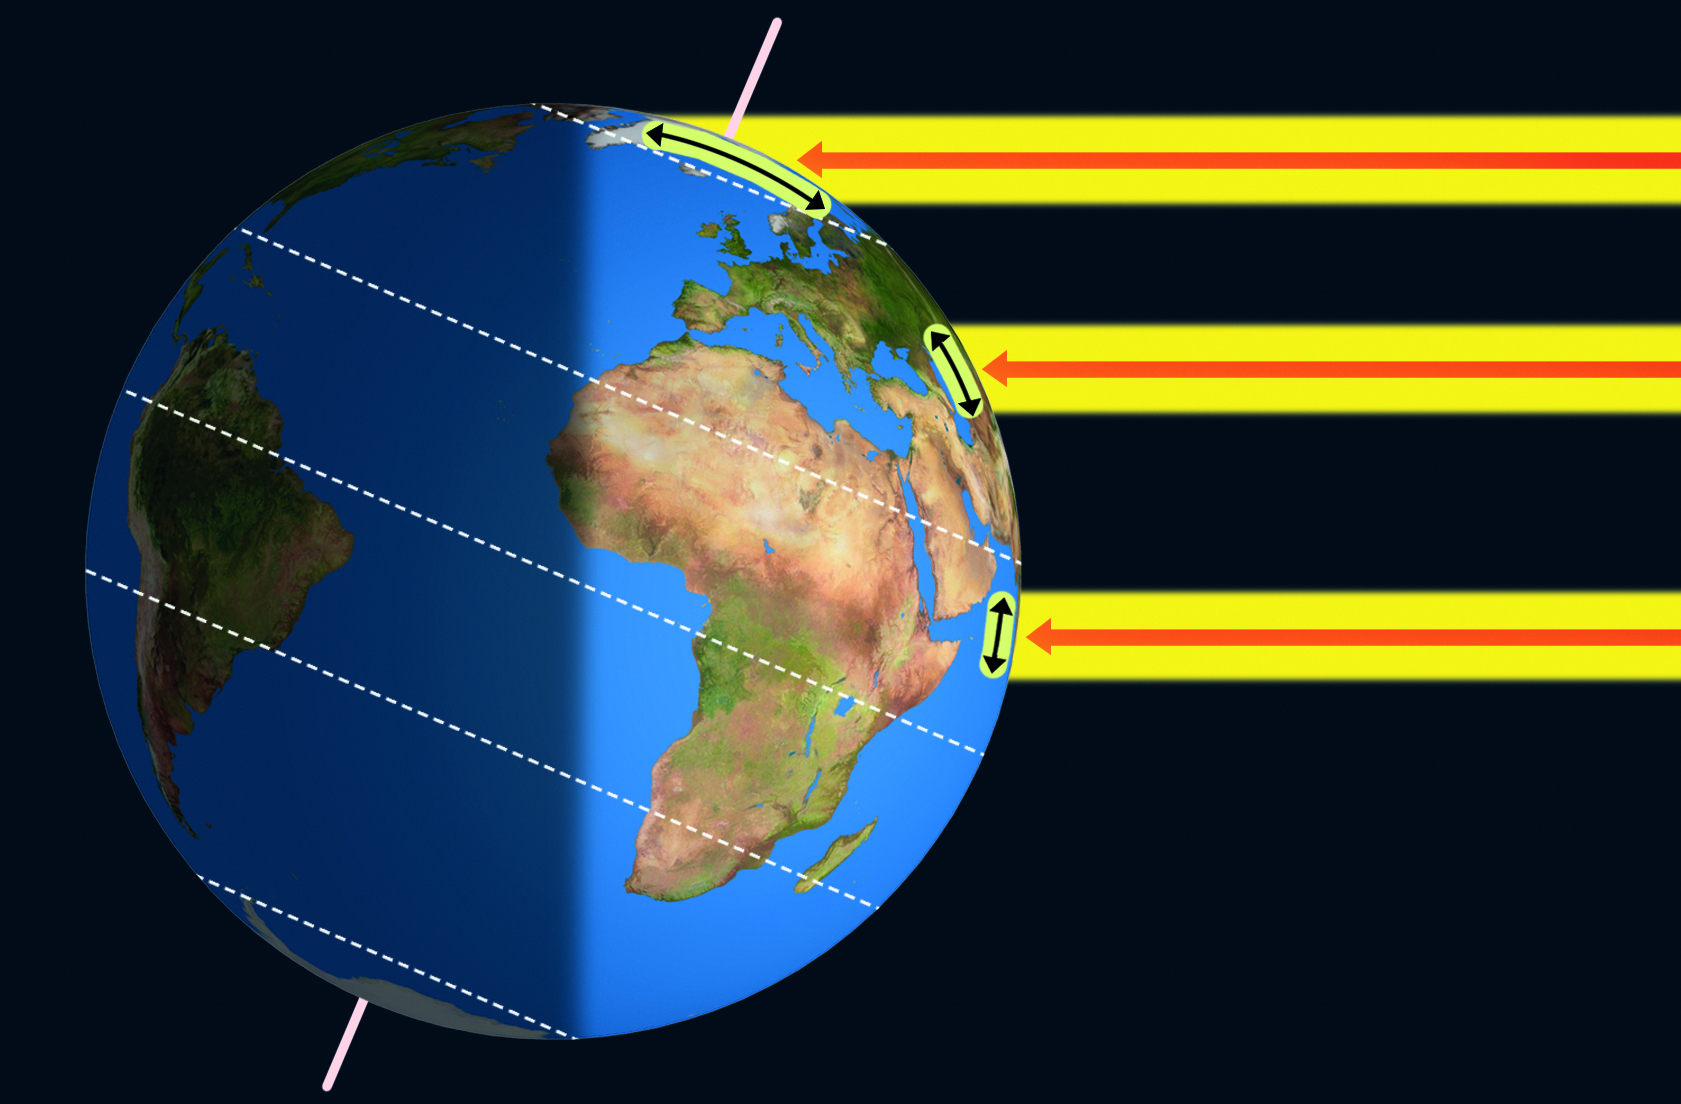 Ilustração. Superfície terrestre: distribuição de calor. O planeta Terra está representado de acordo com a inclinação do seu eixo. Sobre o planeta há linhas horizontais pontilhadas brancas que sinalizam os principais paralelos terrestres. Há setas vermelhas sobre linhas amarelas partindo da direita para a esquerda e apontando para a superfície do planeta. A parte direita da Terra está iluminada. À esquerda, sombra.